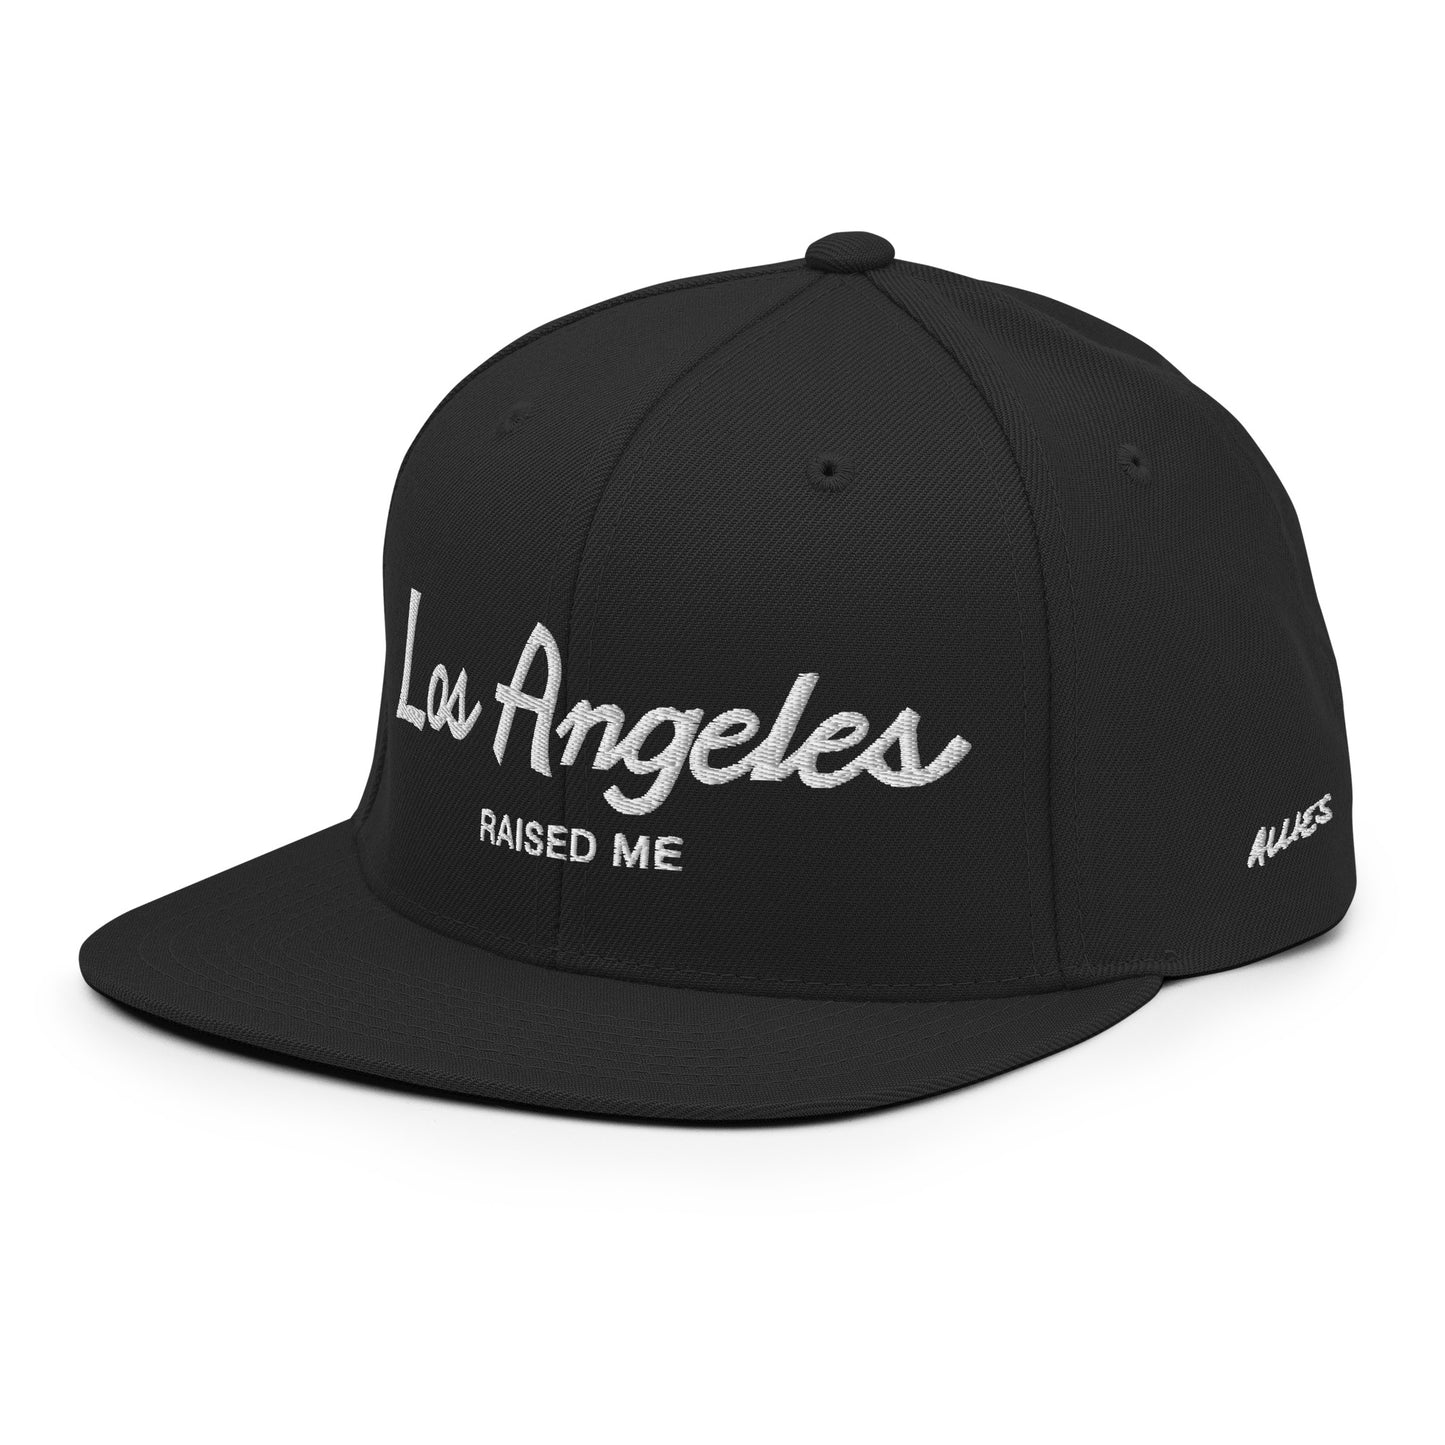 Los Angeles Raised Me Hat